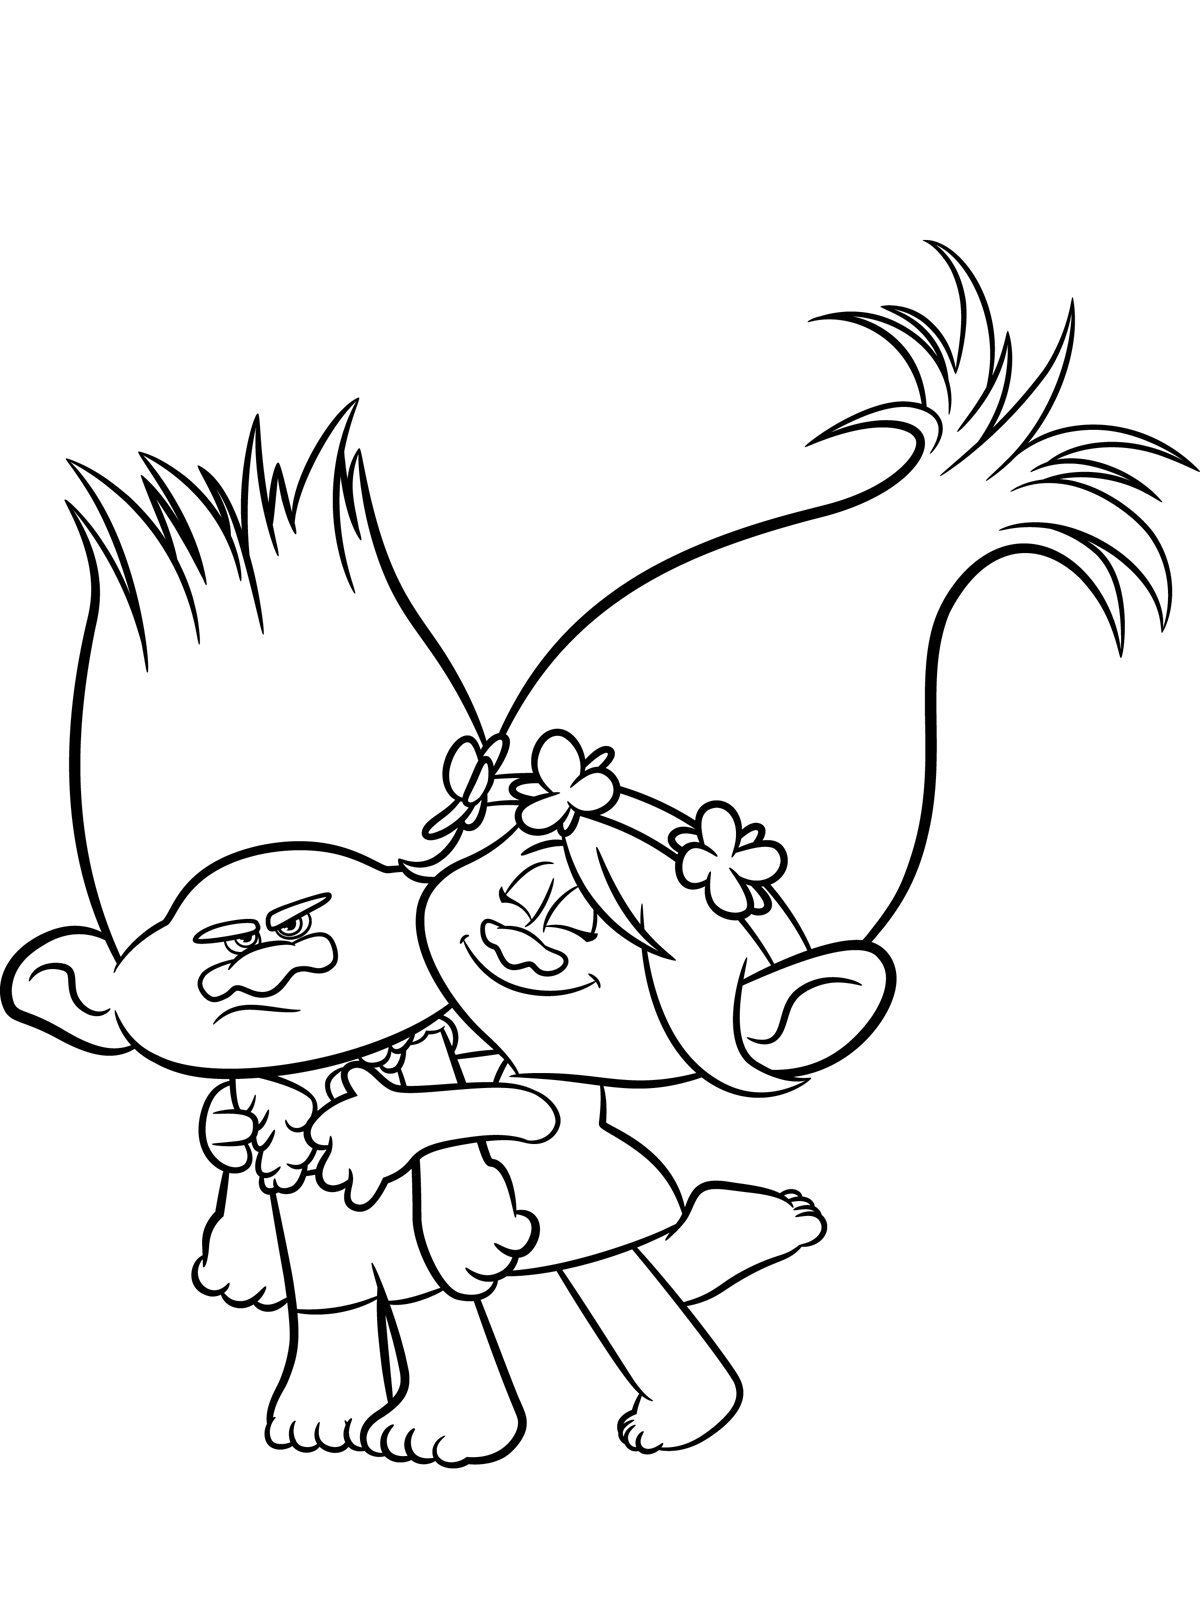 Desenhos para colorir dos Trolls  Poppy coloring page, Disney coloring  pages, Coloring pages